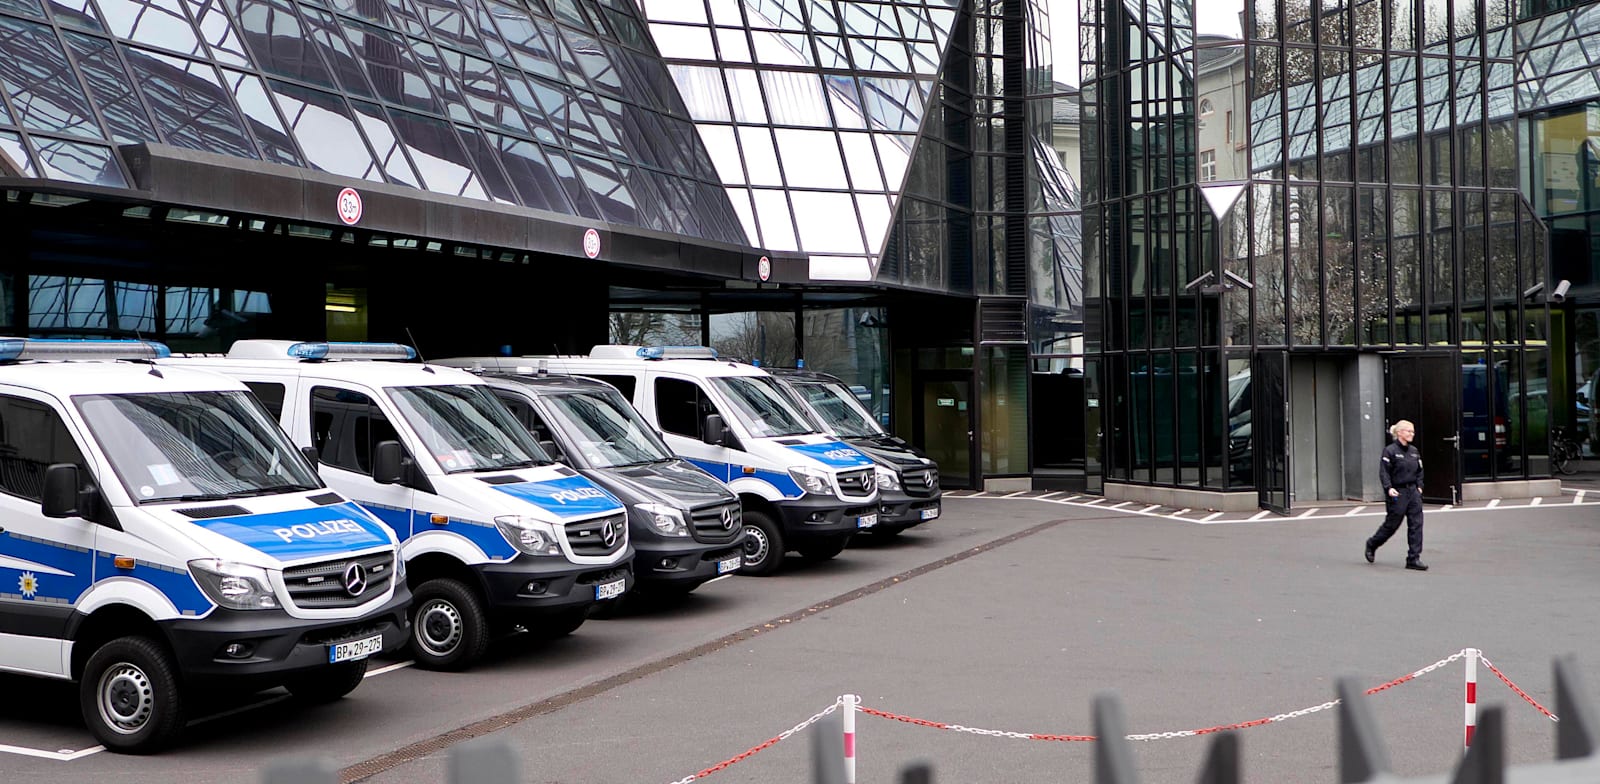 פשיטה של המשטרה על דויטשה בנק בפרנקפורט, 2018 / צילום: Associated Press, Michael Probst